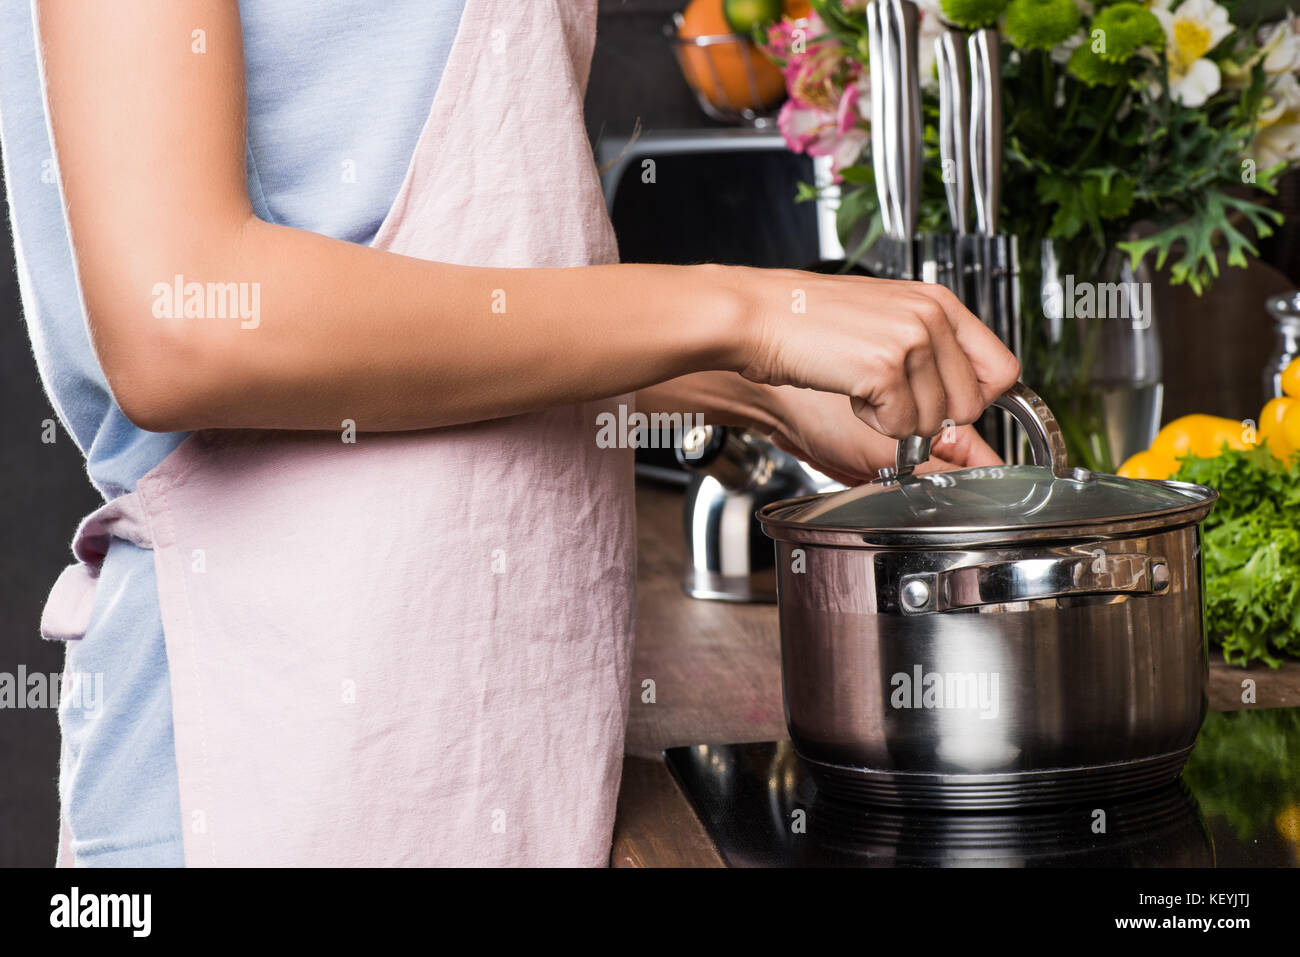 woman preparing food in saucepan Stock Photo